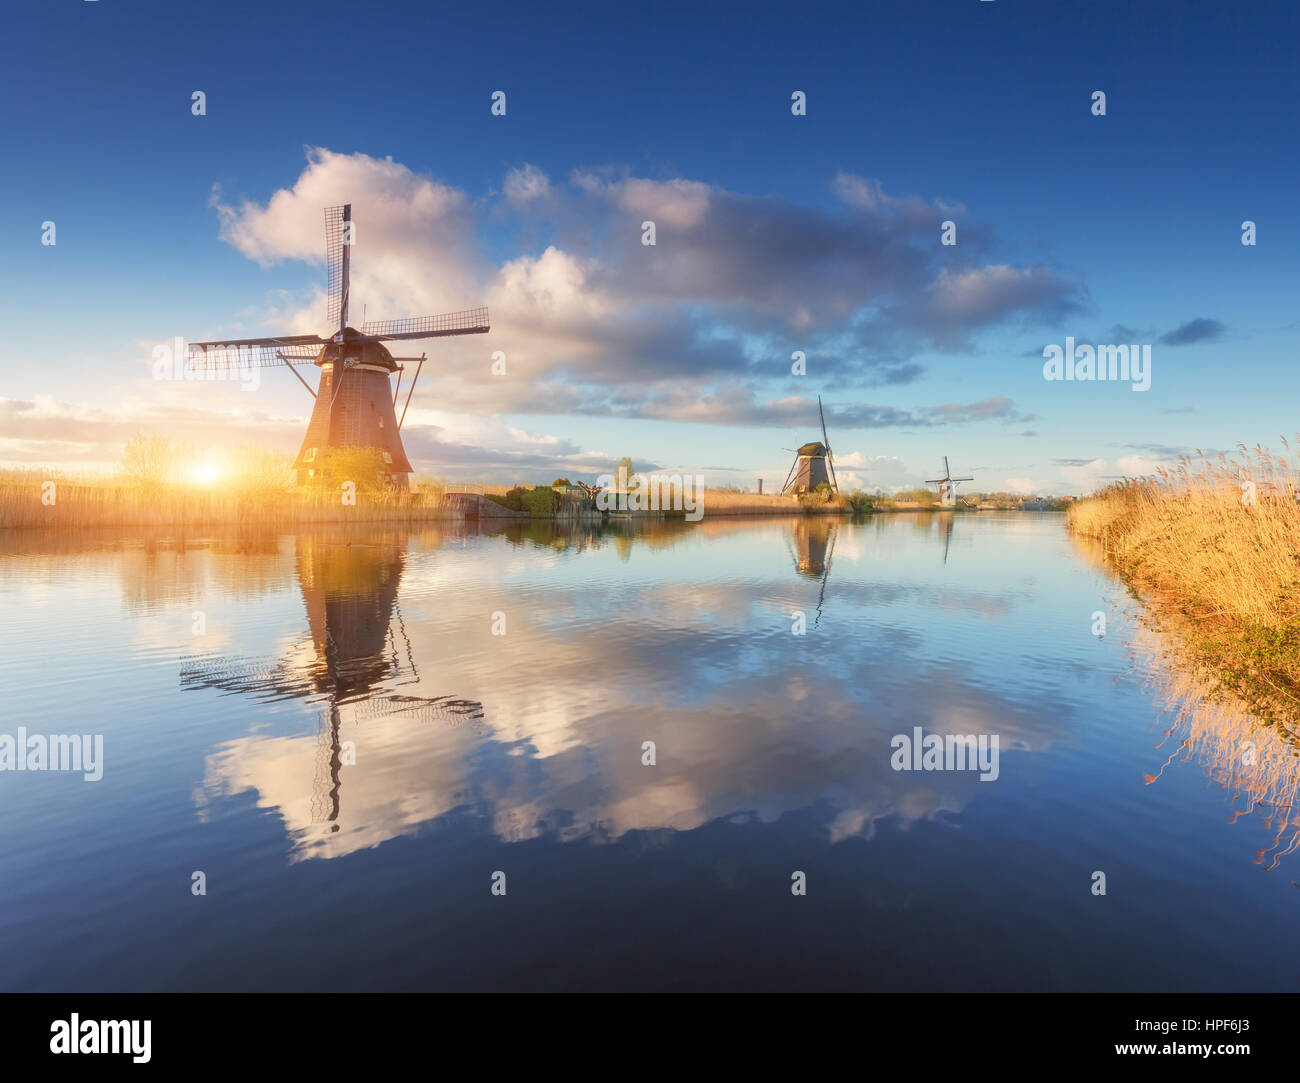 Molinos de viento en el amanecer. Agreste paisaje con impresionantes molinos holandeses cerca de los canales de agua con el cielo azul y las nubes se reflejan en el agua Foto de stock